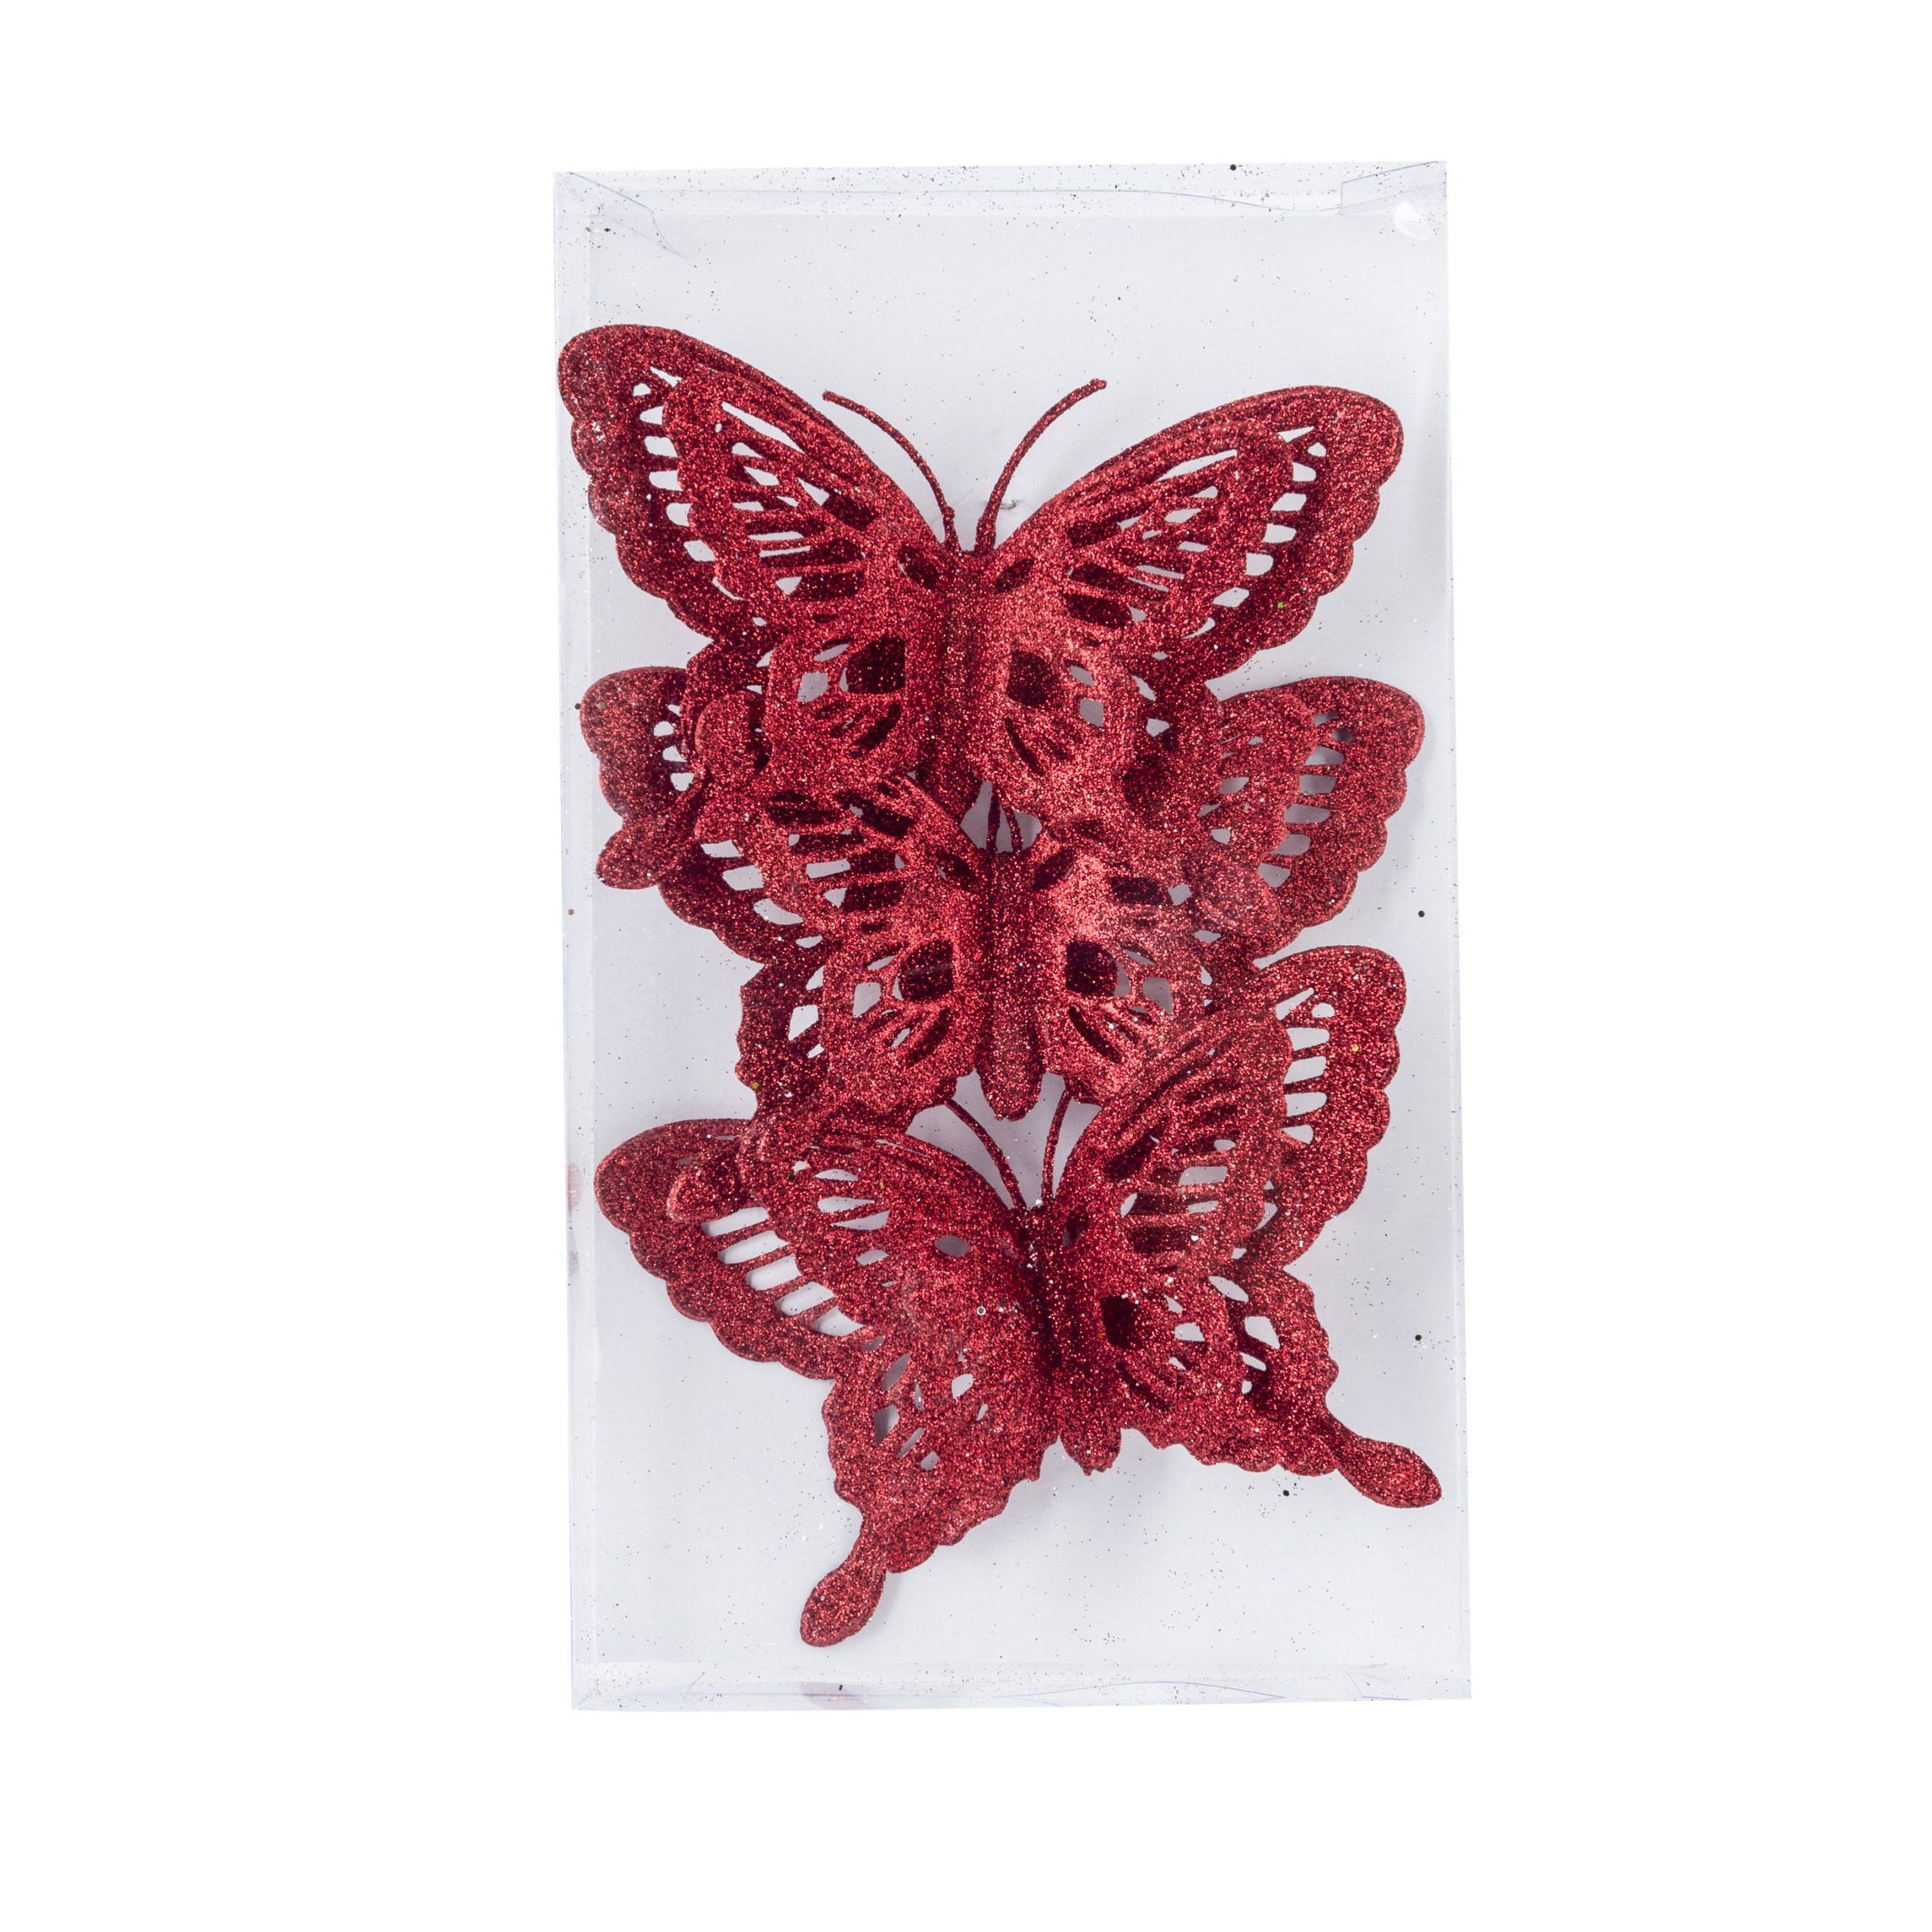 3x stuks decoratie vlinders op clip glitter rood 14 cm